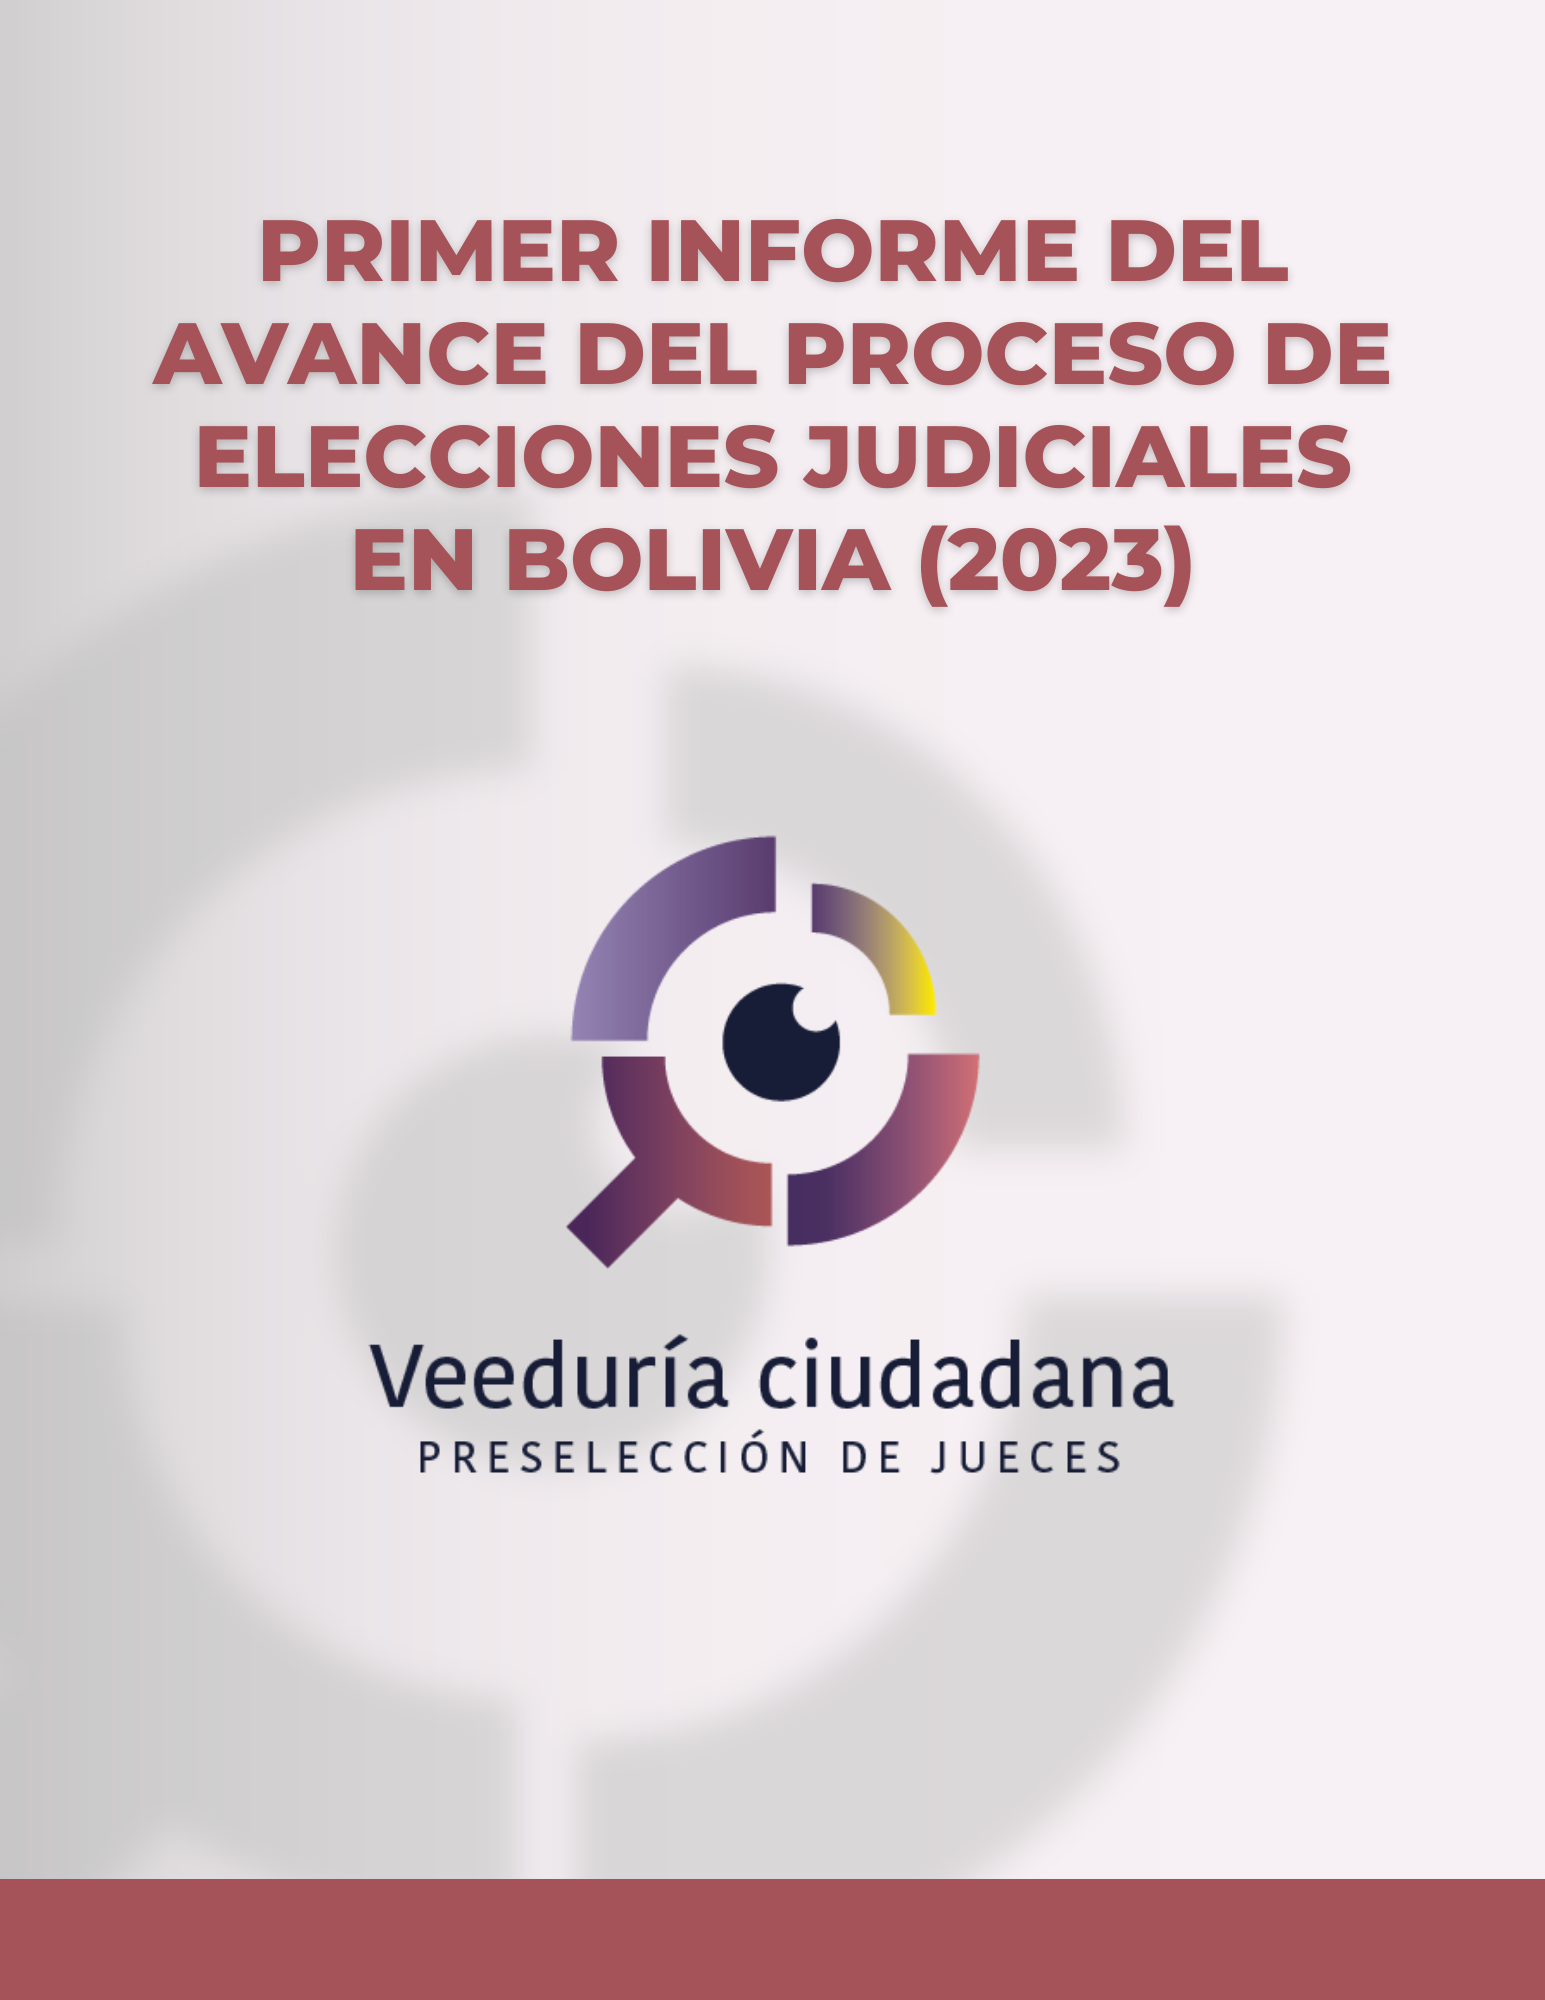 PRIMER INFORME DEL AVANCE DEL PROCESO DE ELECCIONES JUDICIALES EN BOLIVIA (2023)